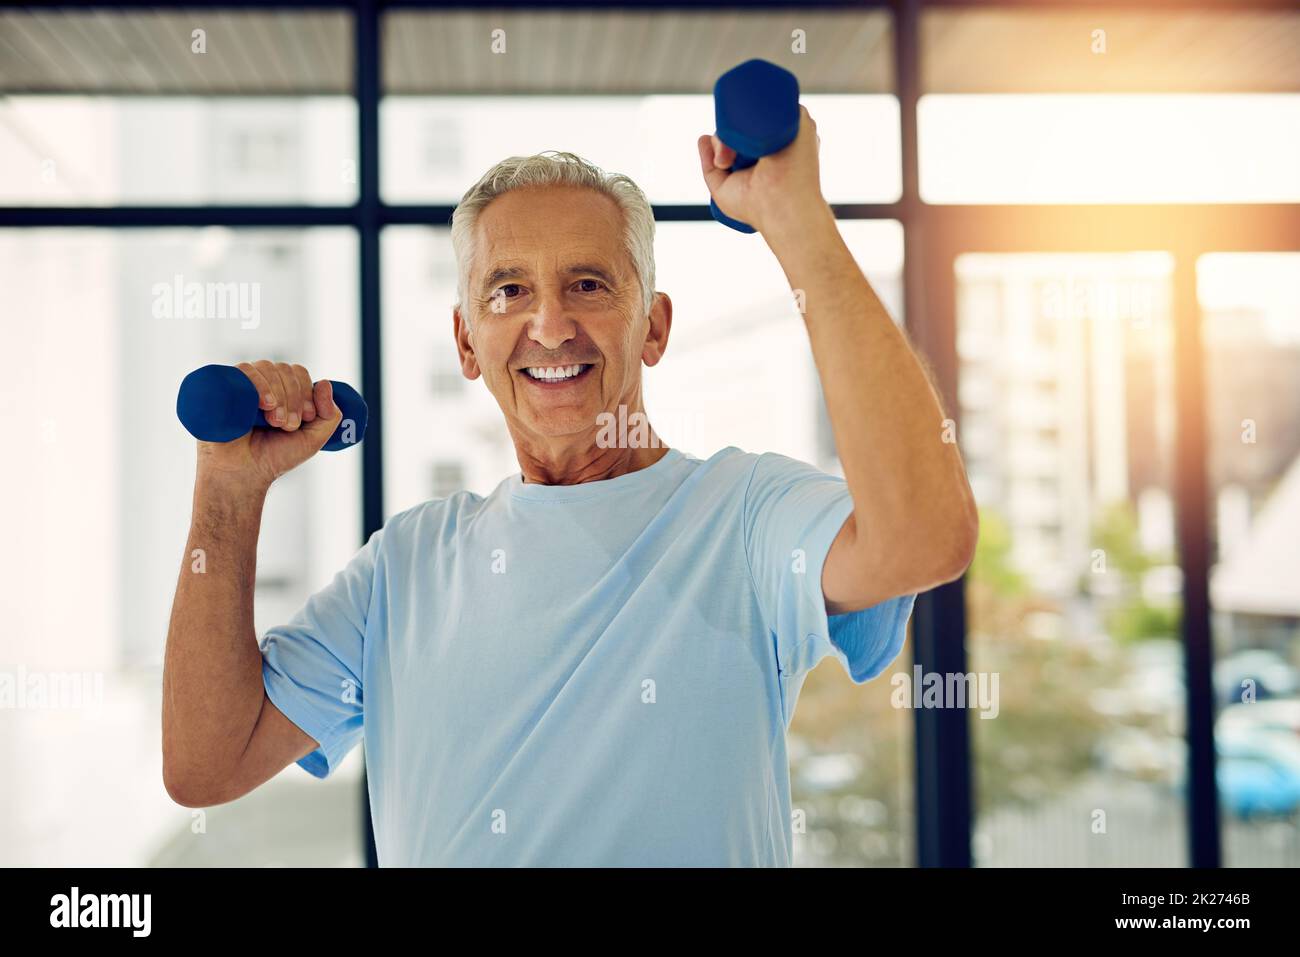 Rimanere attivi significa invecchiare bene. Ritratto di un adulto in forma sorridente mentre solleva pesi al centro fitness. Foto Stock